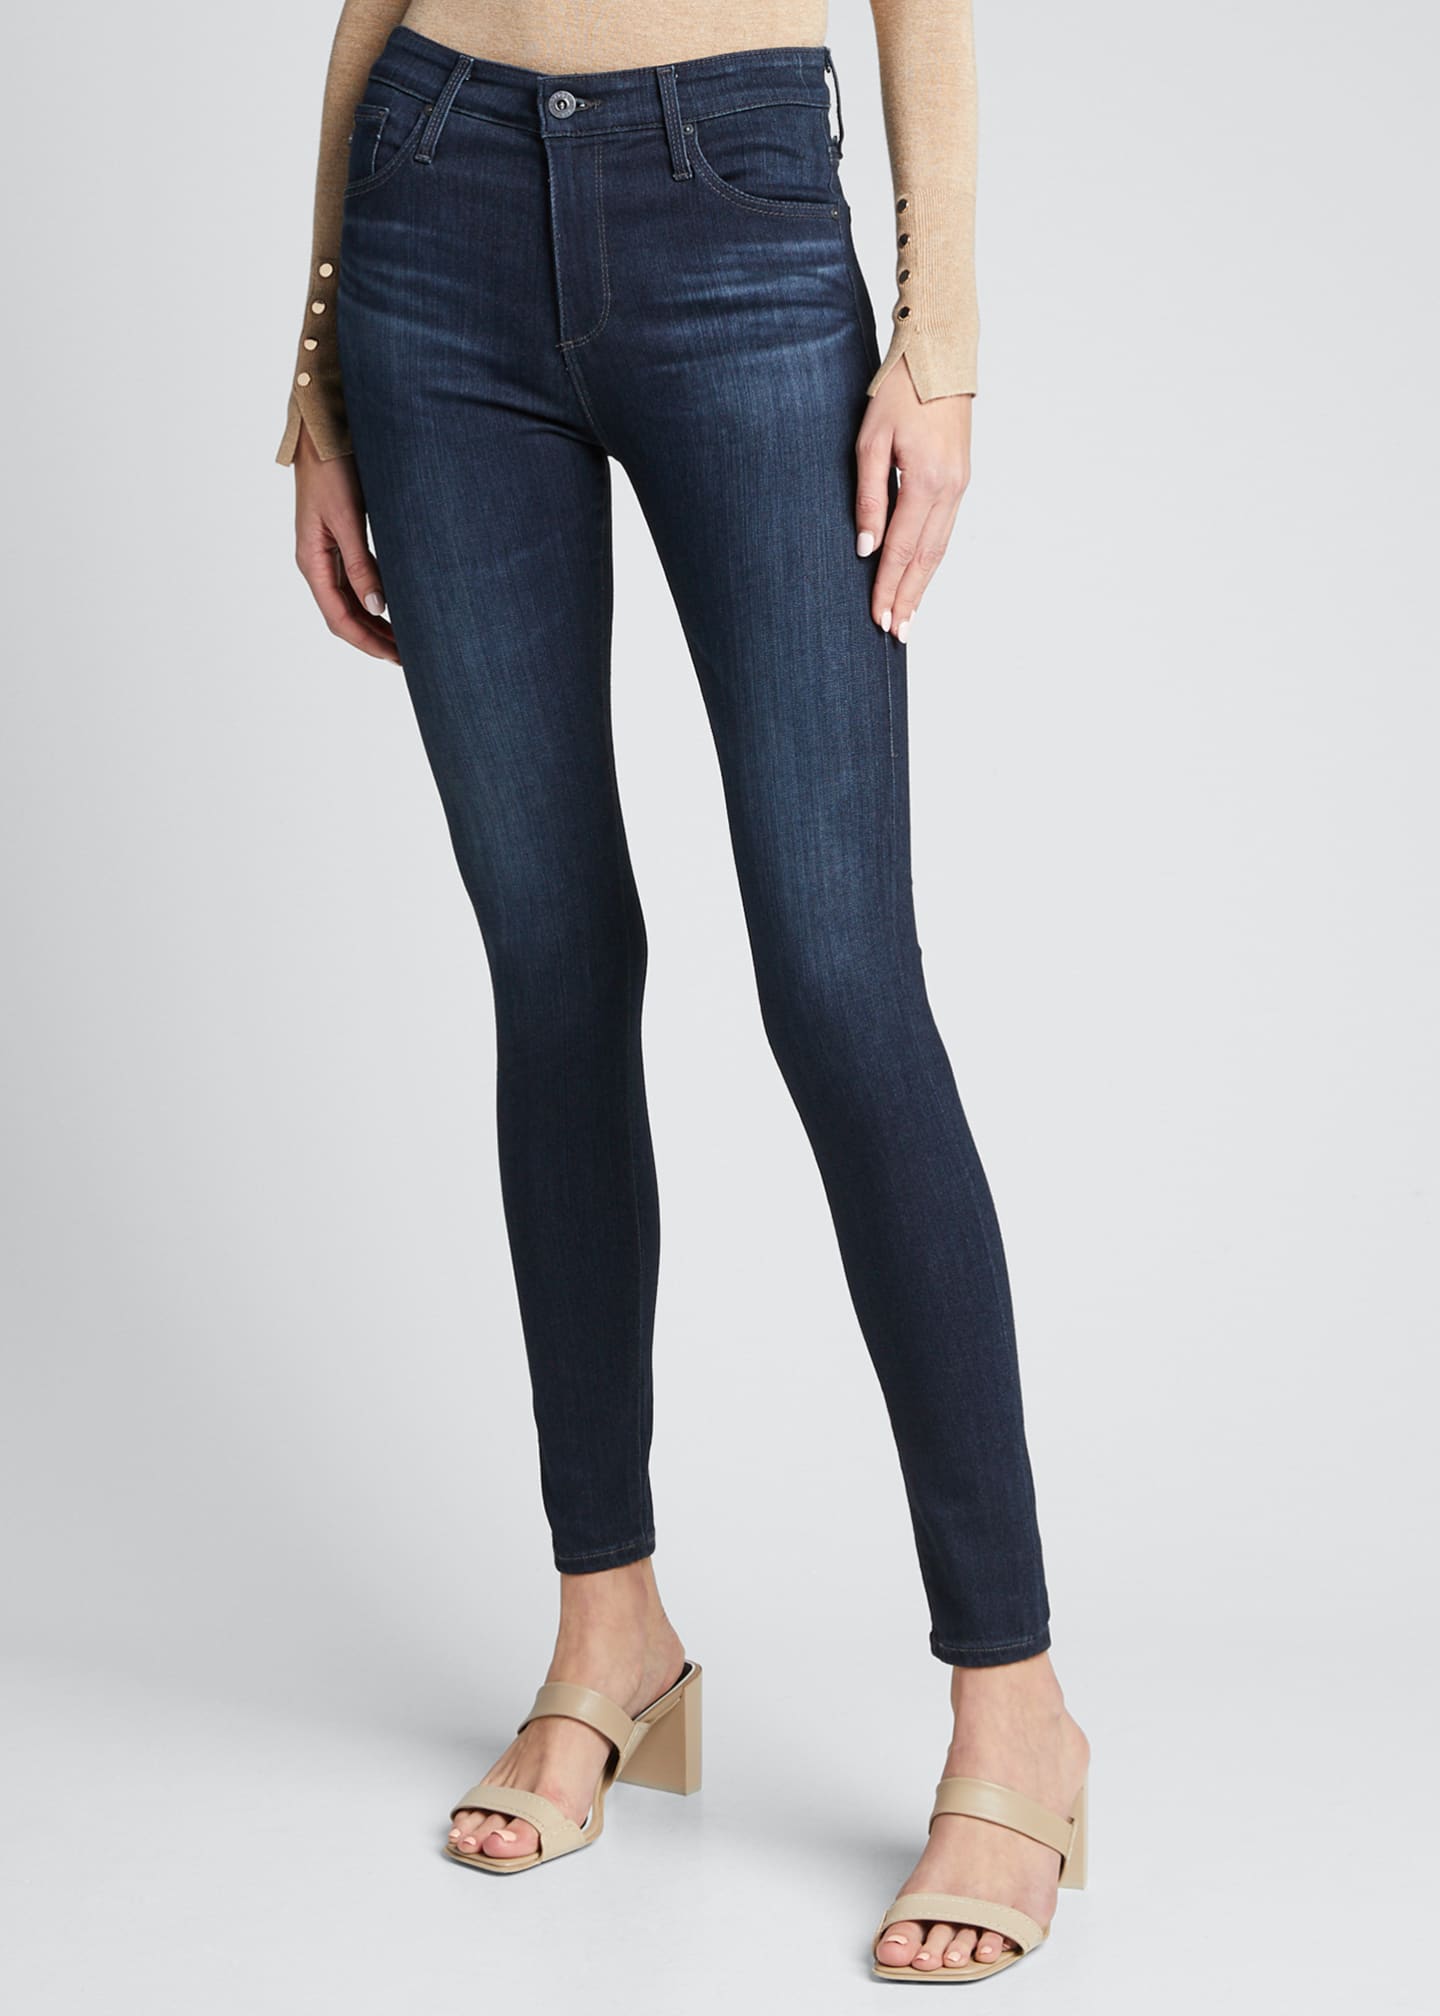 ag jeans farrah high rise skinny